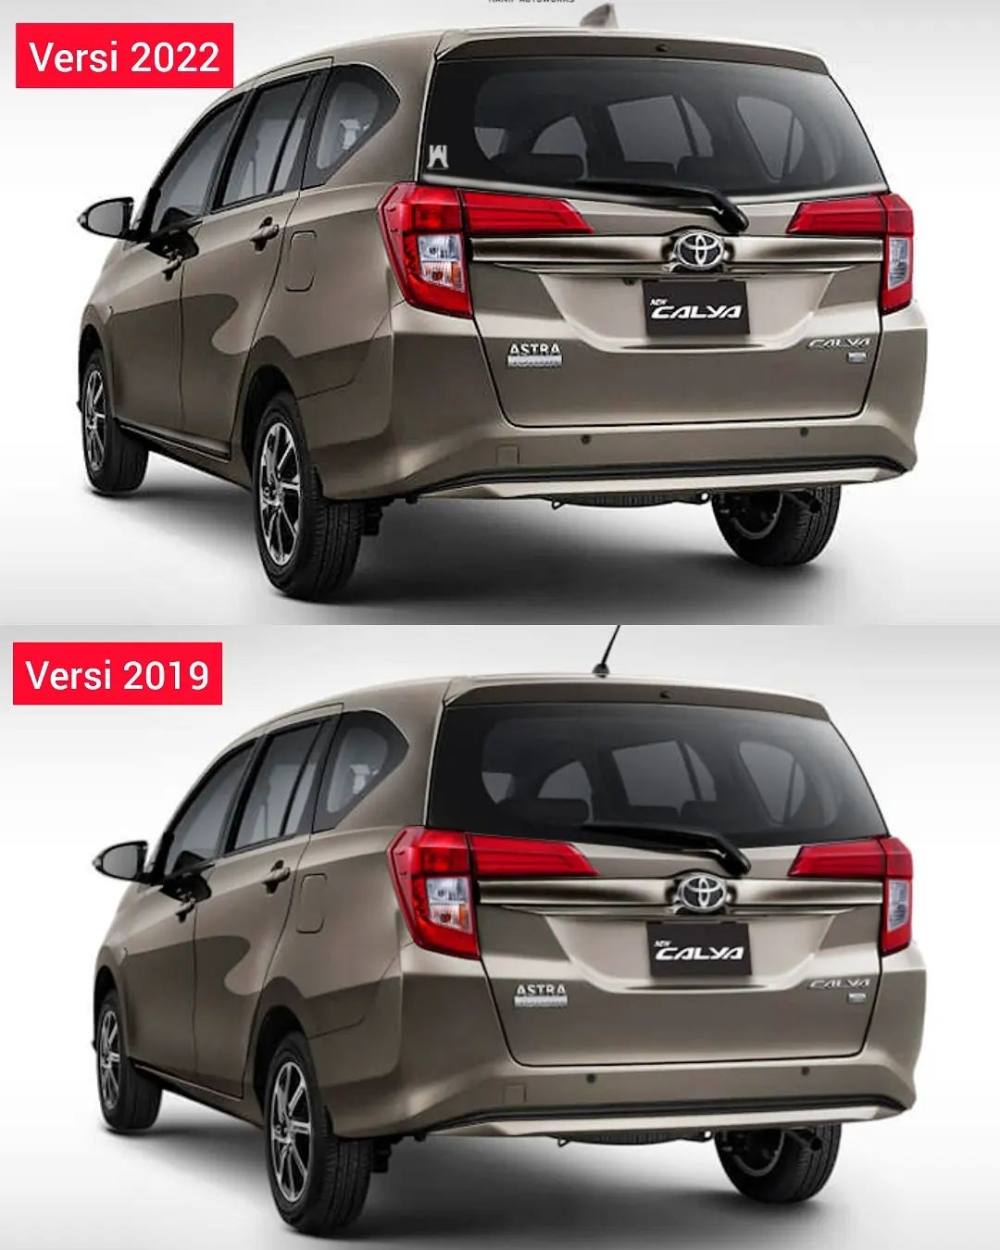 Thiết kế phía sau của Toyota Calya 2022 giữ nguyên như cũ